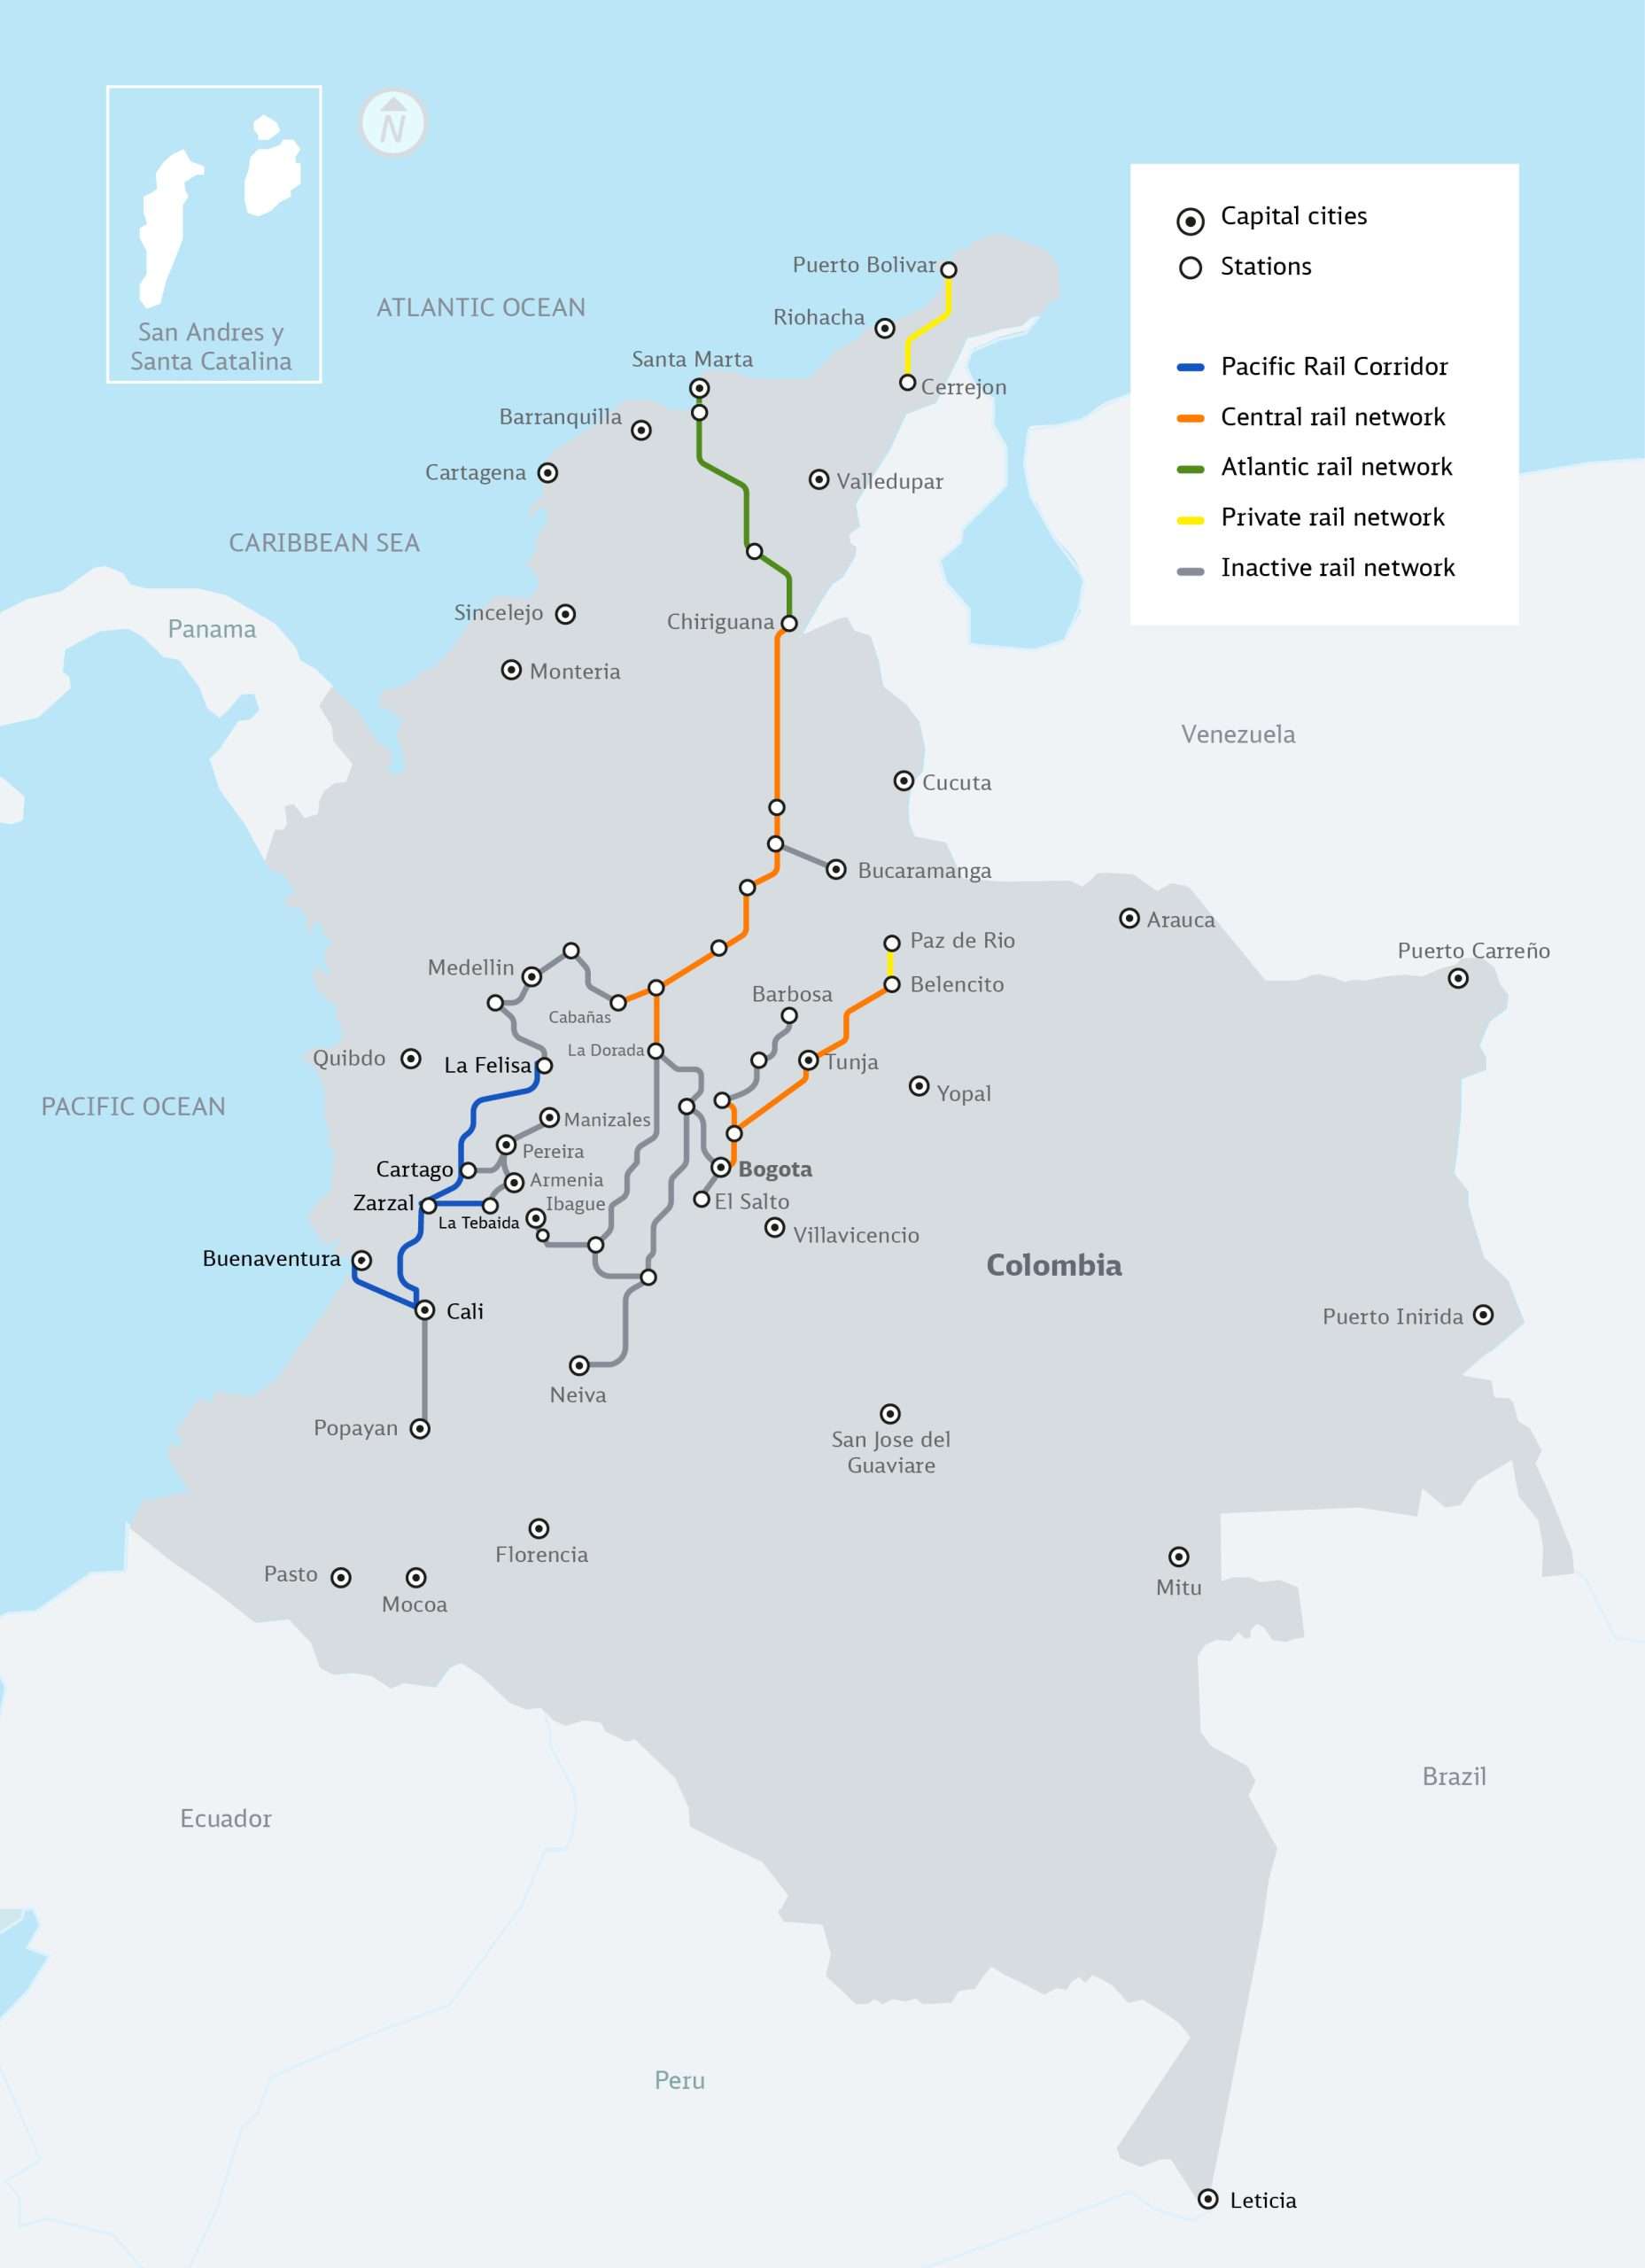 Pacific rail corridor: route in Colombia